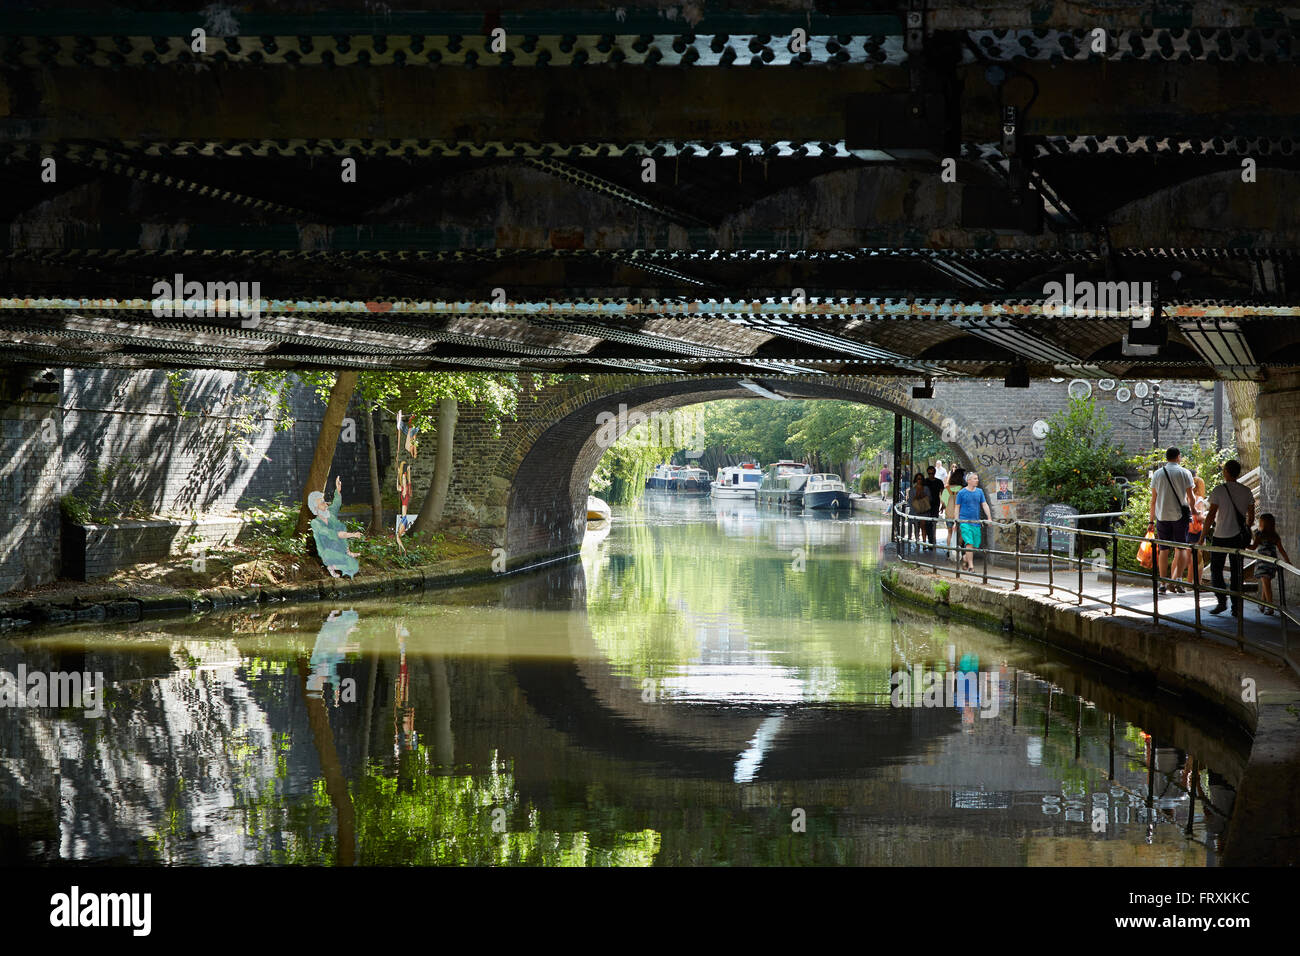 La piccola venezia canal in un giorno di estate, sotto la vista del Ponte di Londra Foto Stock